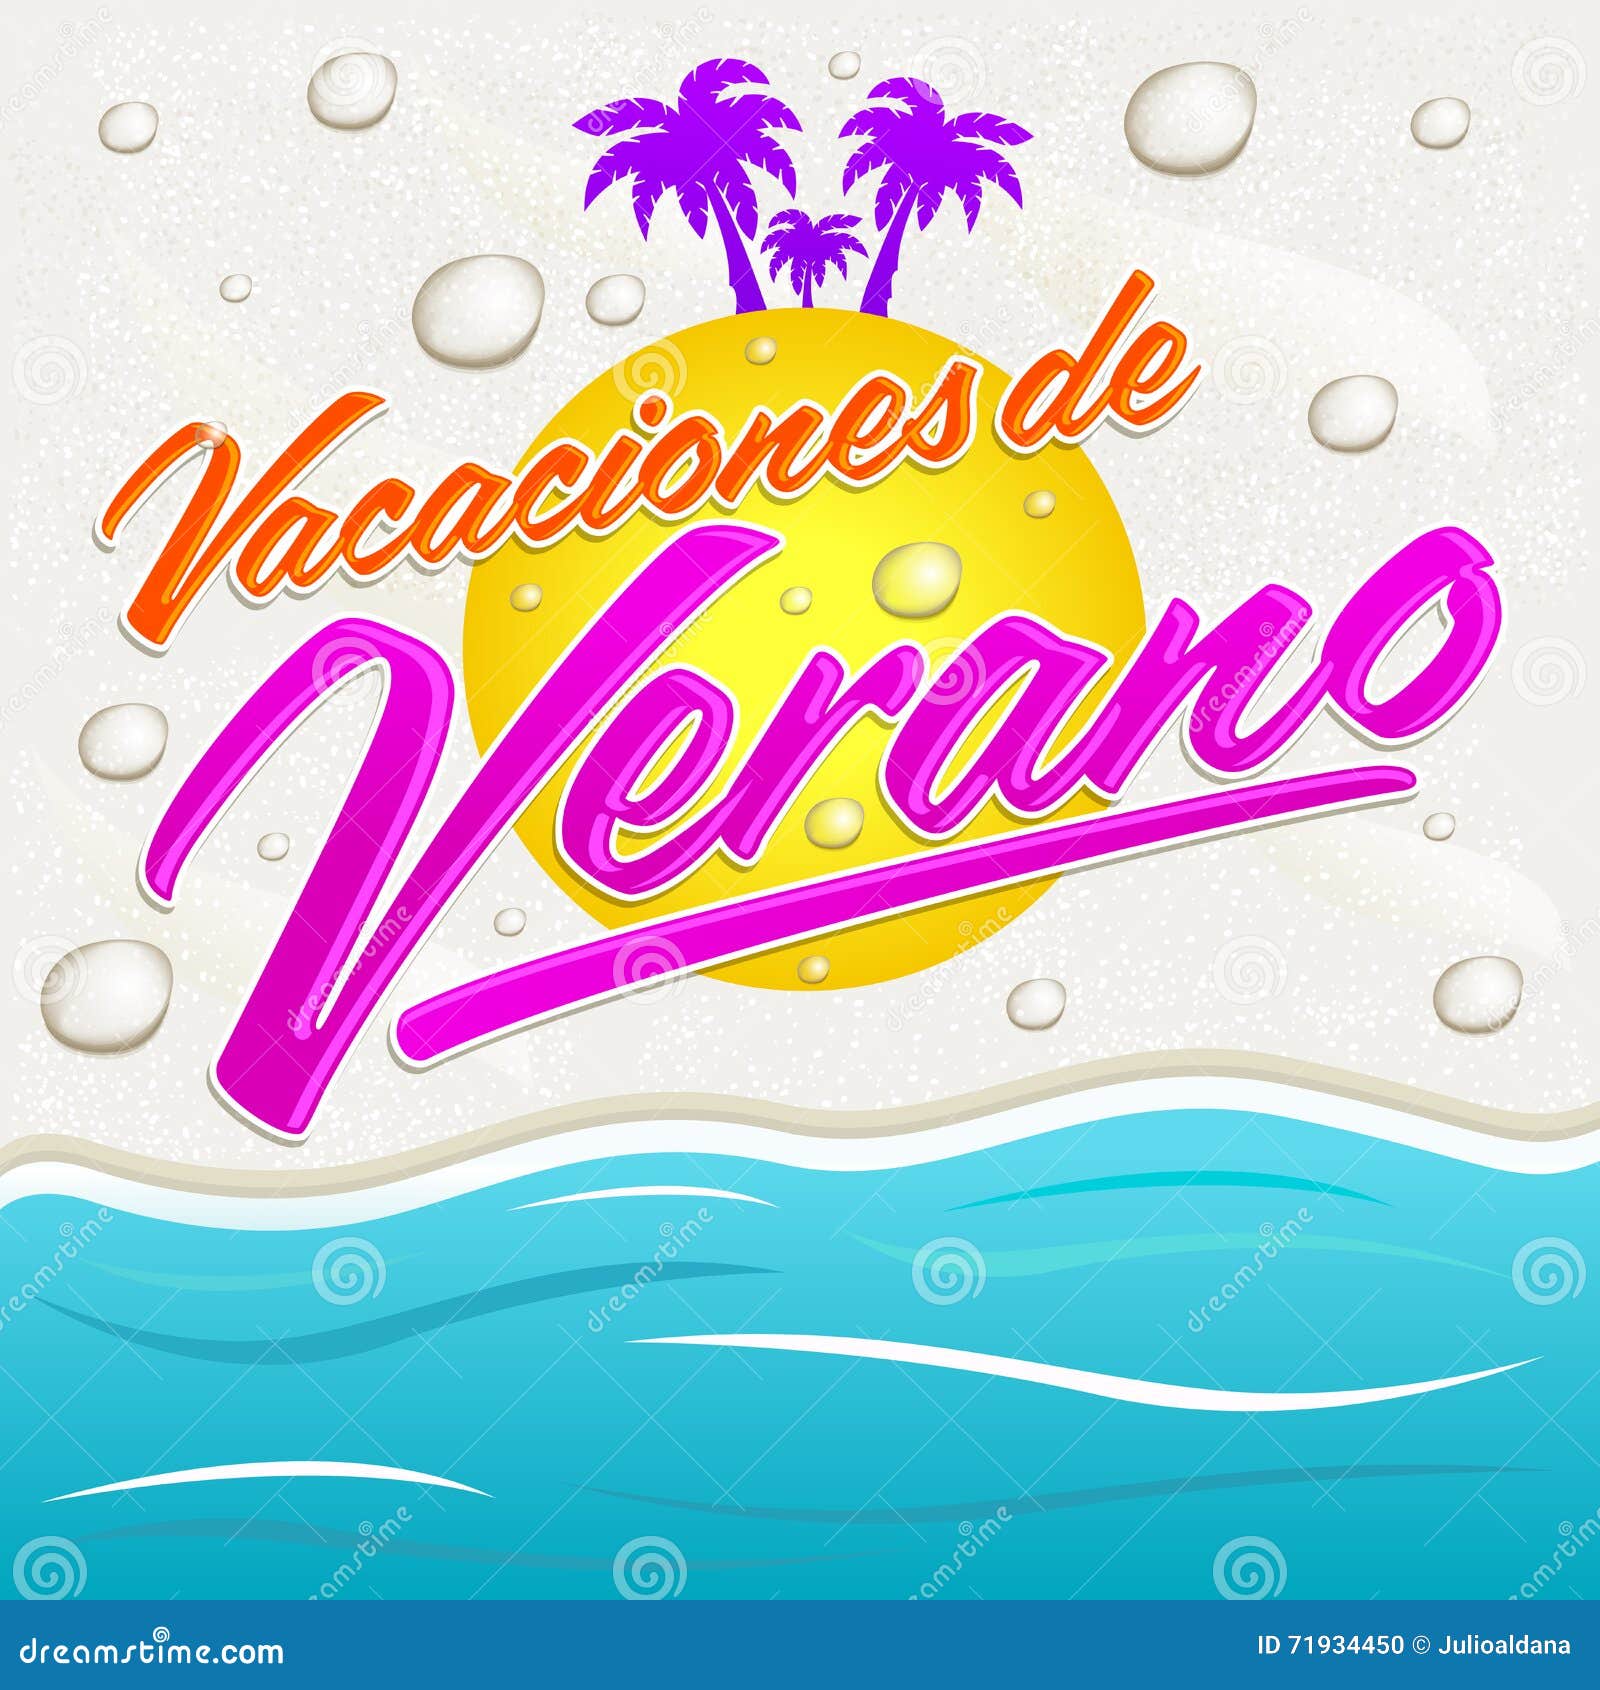 vacaciones del verano - summer vacations spanish text